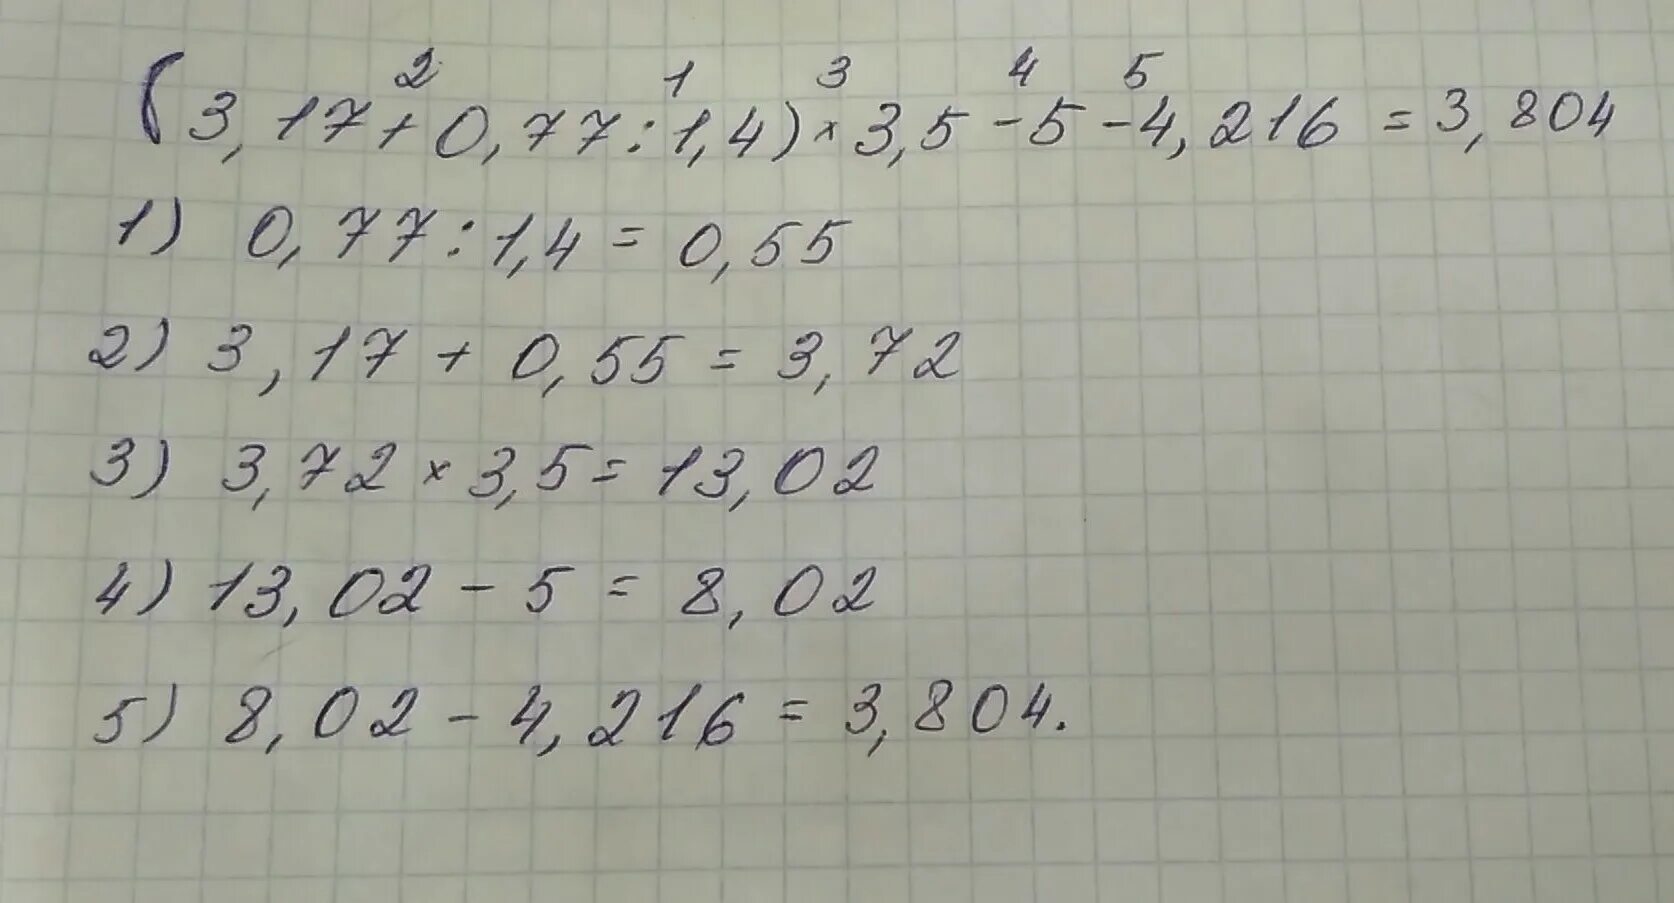 0.5 4 0.1. (3,17+0,77:1,4)*3,5-4,216=Решение. Найдите значение выражения 3 17 0 77 1 4 3 5 4 216. (3,17+0,77:1,4)×3,5-4216 решение. (3,17+0,17:1,4)•3,5-4,216.